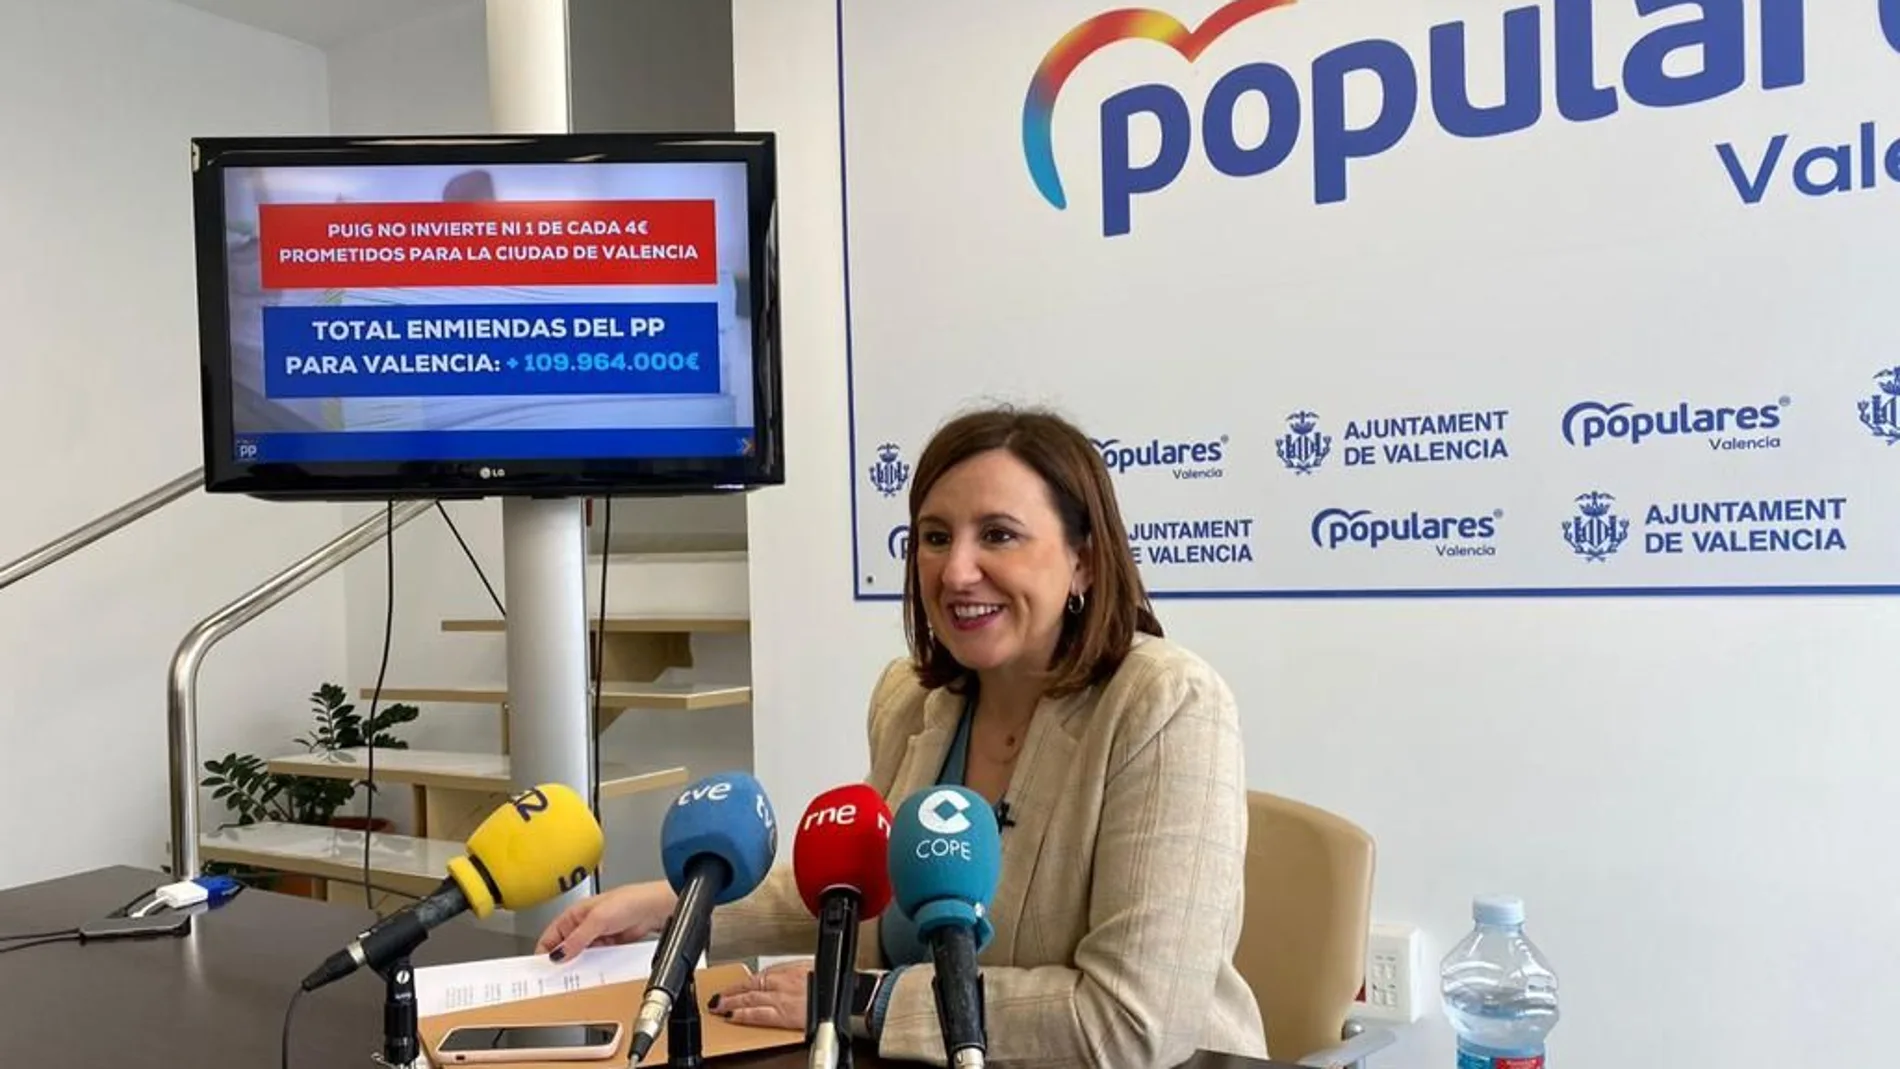 La portavoz del PP, María José Catalá, ha expuesto las enmiendas que su grupo ha presentado a los presupuestos de la Generalitat relativas a la ciudad de Valencia